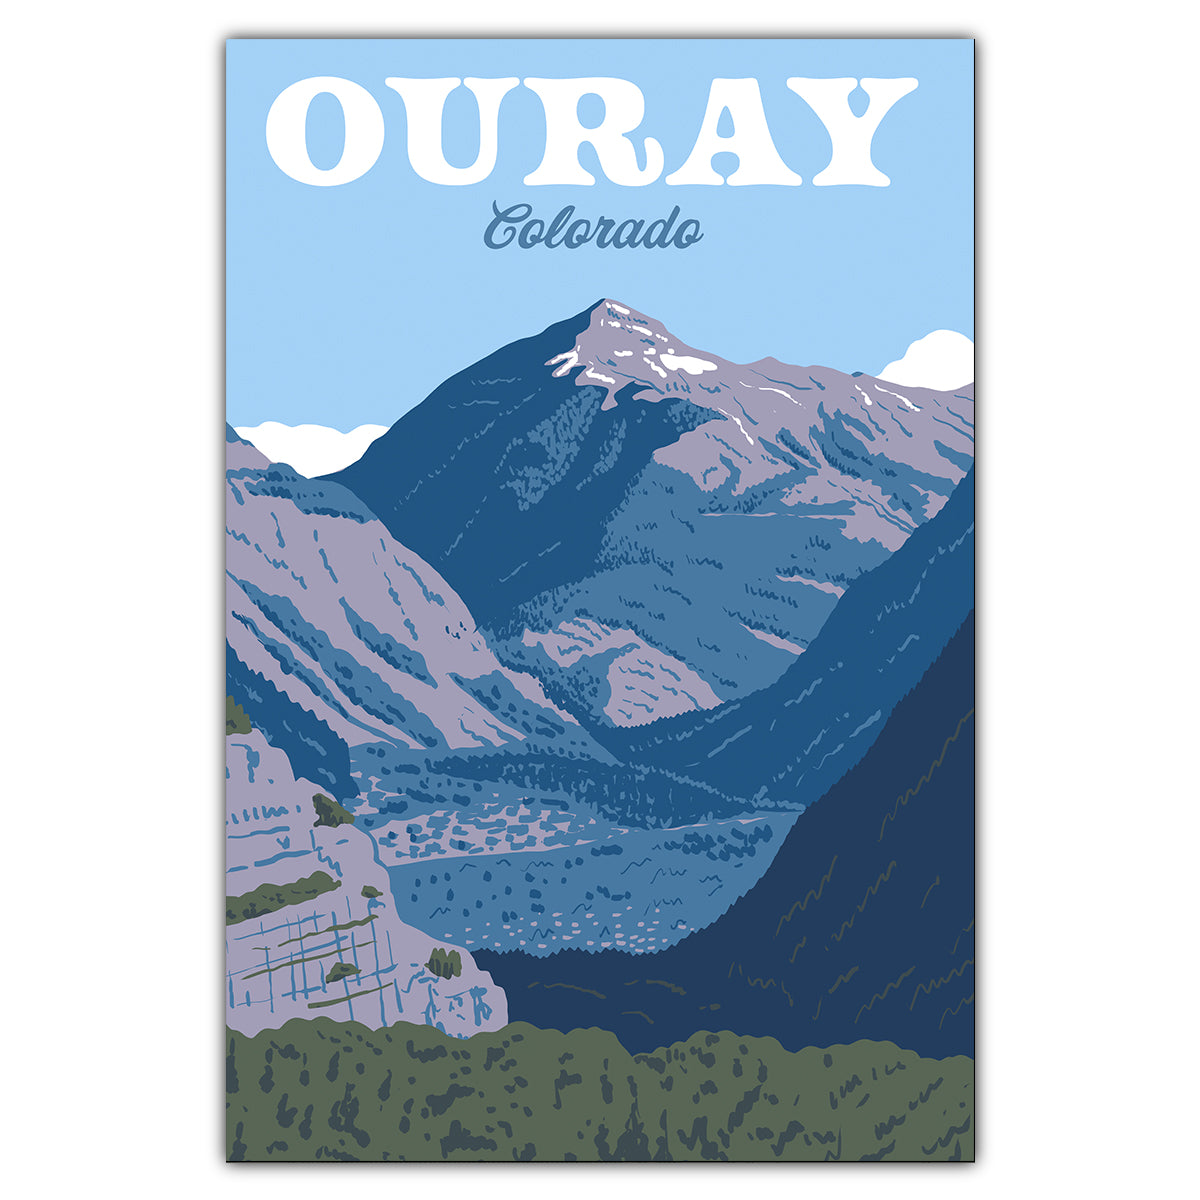 Ouray Colorado Postcard